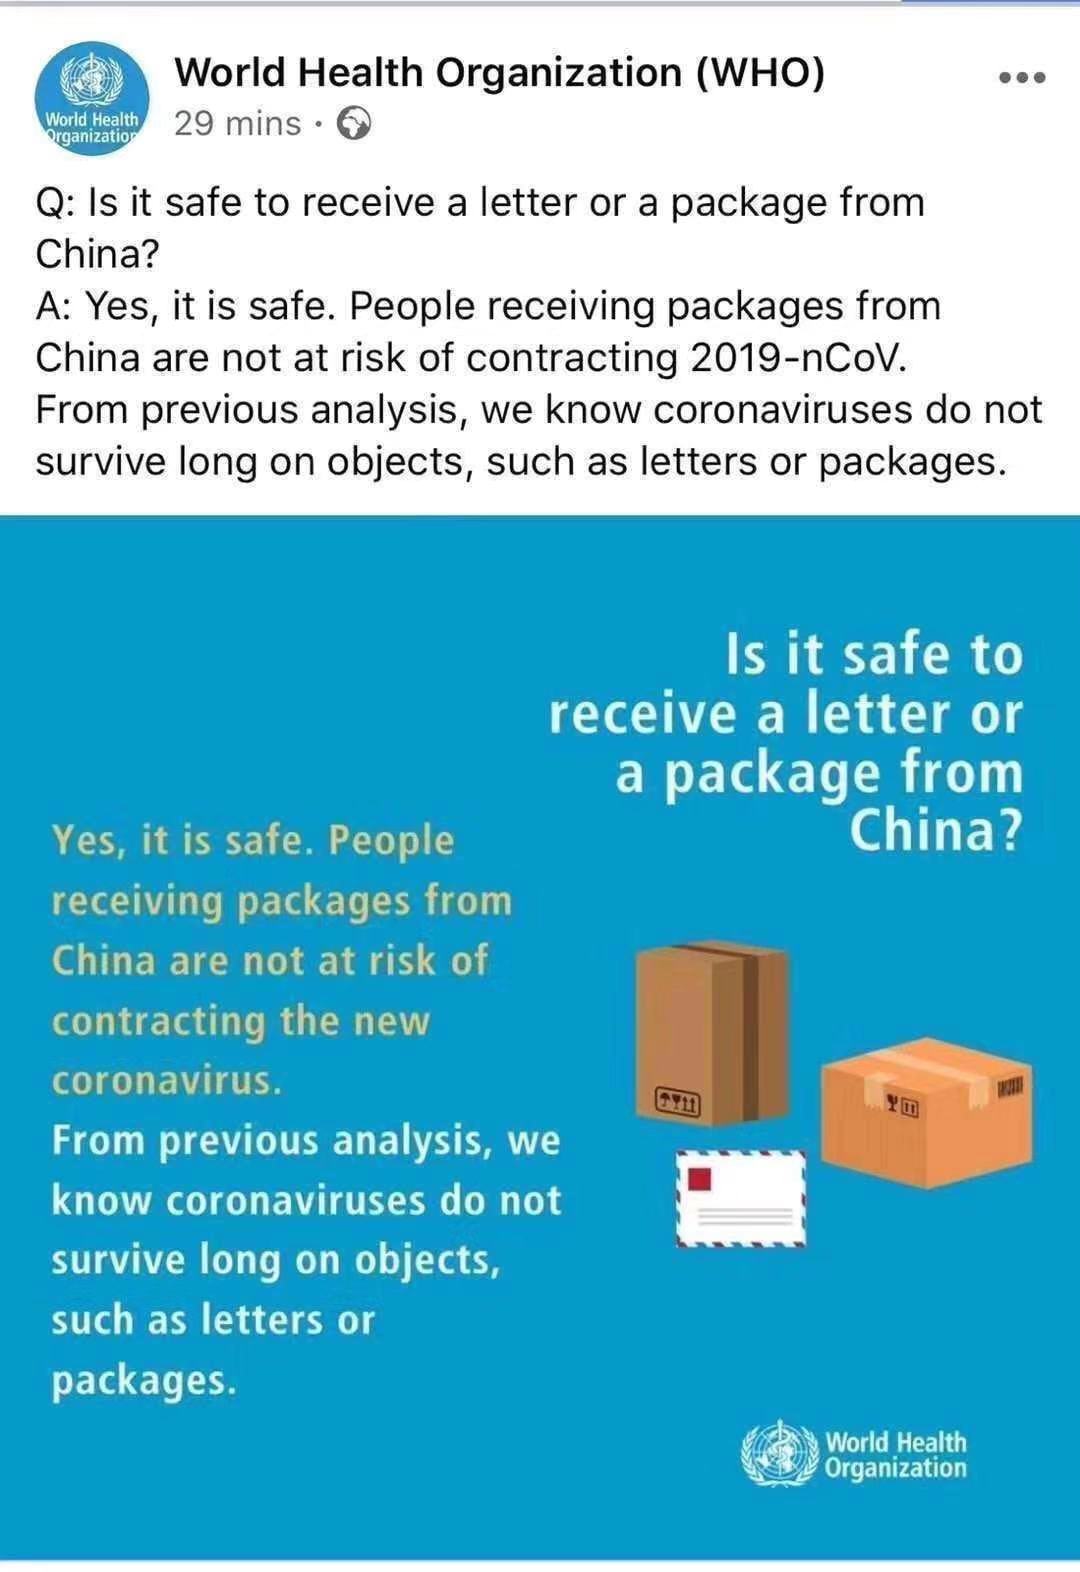 Có an toàn khi nhận thư hoặc gói hàng từ Trung Quốc không?
        